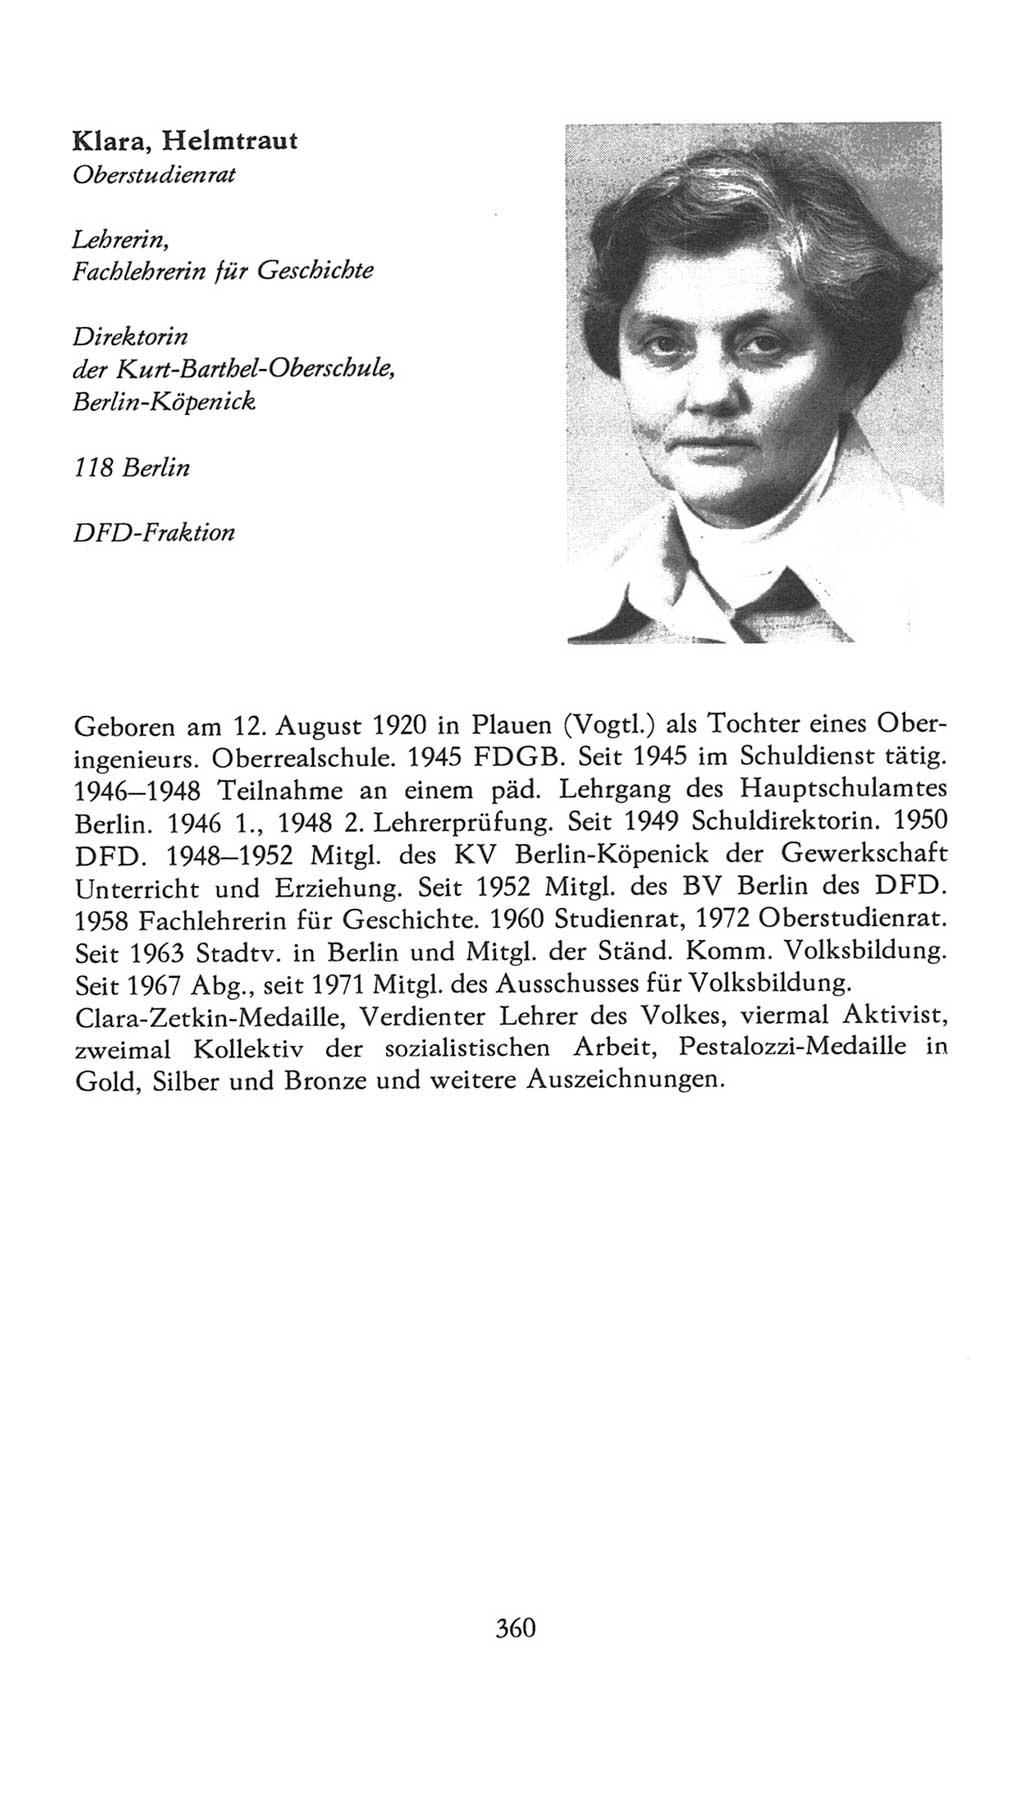 Volkskammer (VK) der Deutschen Demokratischen Republik (DDR), 7. Wahlperiode 1976-1981, Seite 360 (VK. DDR 7. WP. 1976-1981, S. 360)